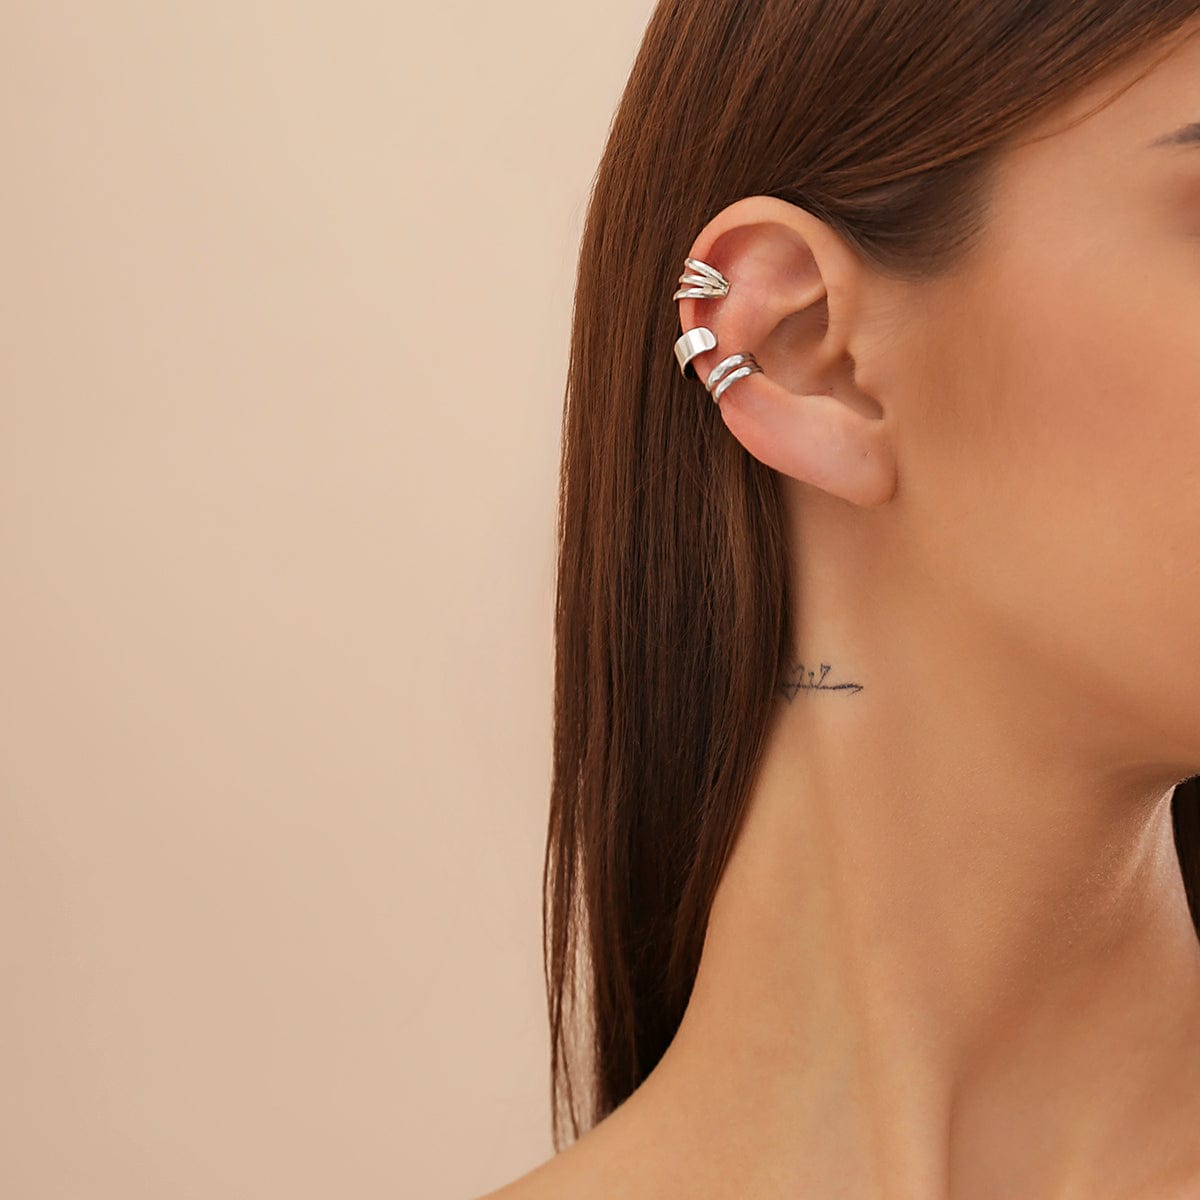 Minimalist Gold Silver Plated Ear Cuff Earrings Set - ArtGalleryZen